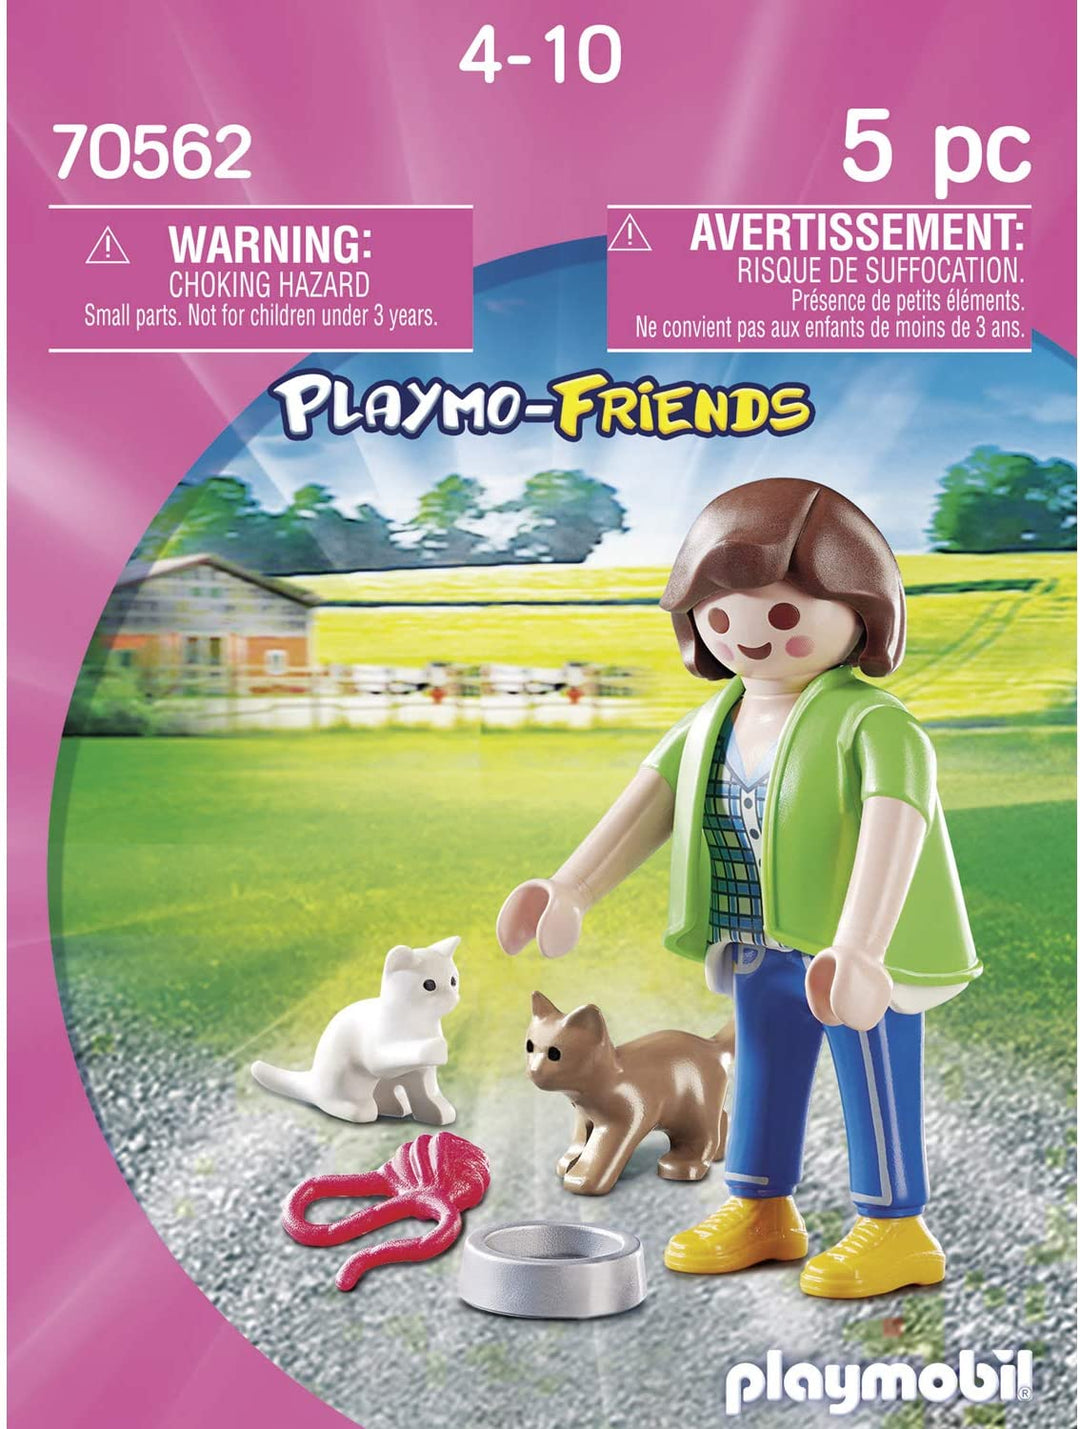 Playmobil 70562 Playmo-Friends Ragazzo con auto radiocomandata, per bambini dai 4 anni in su